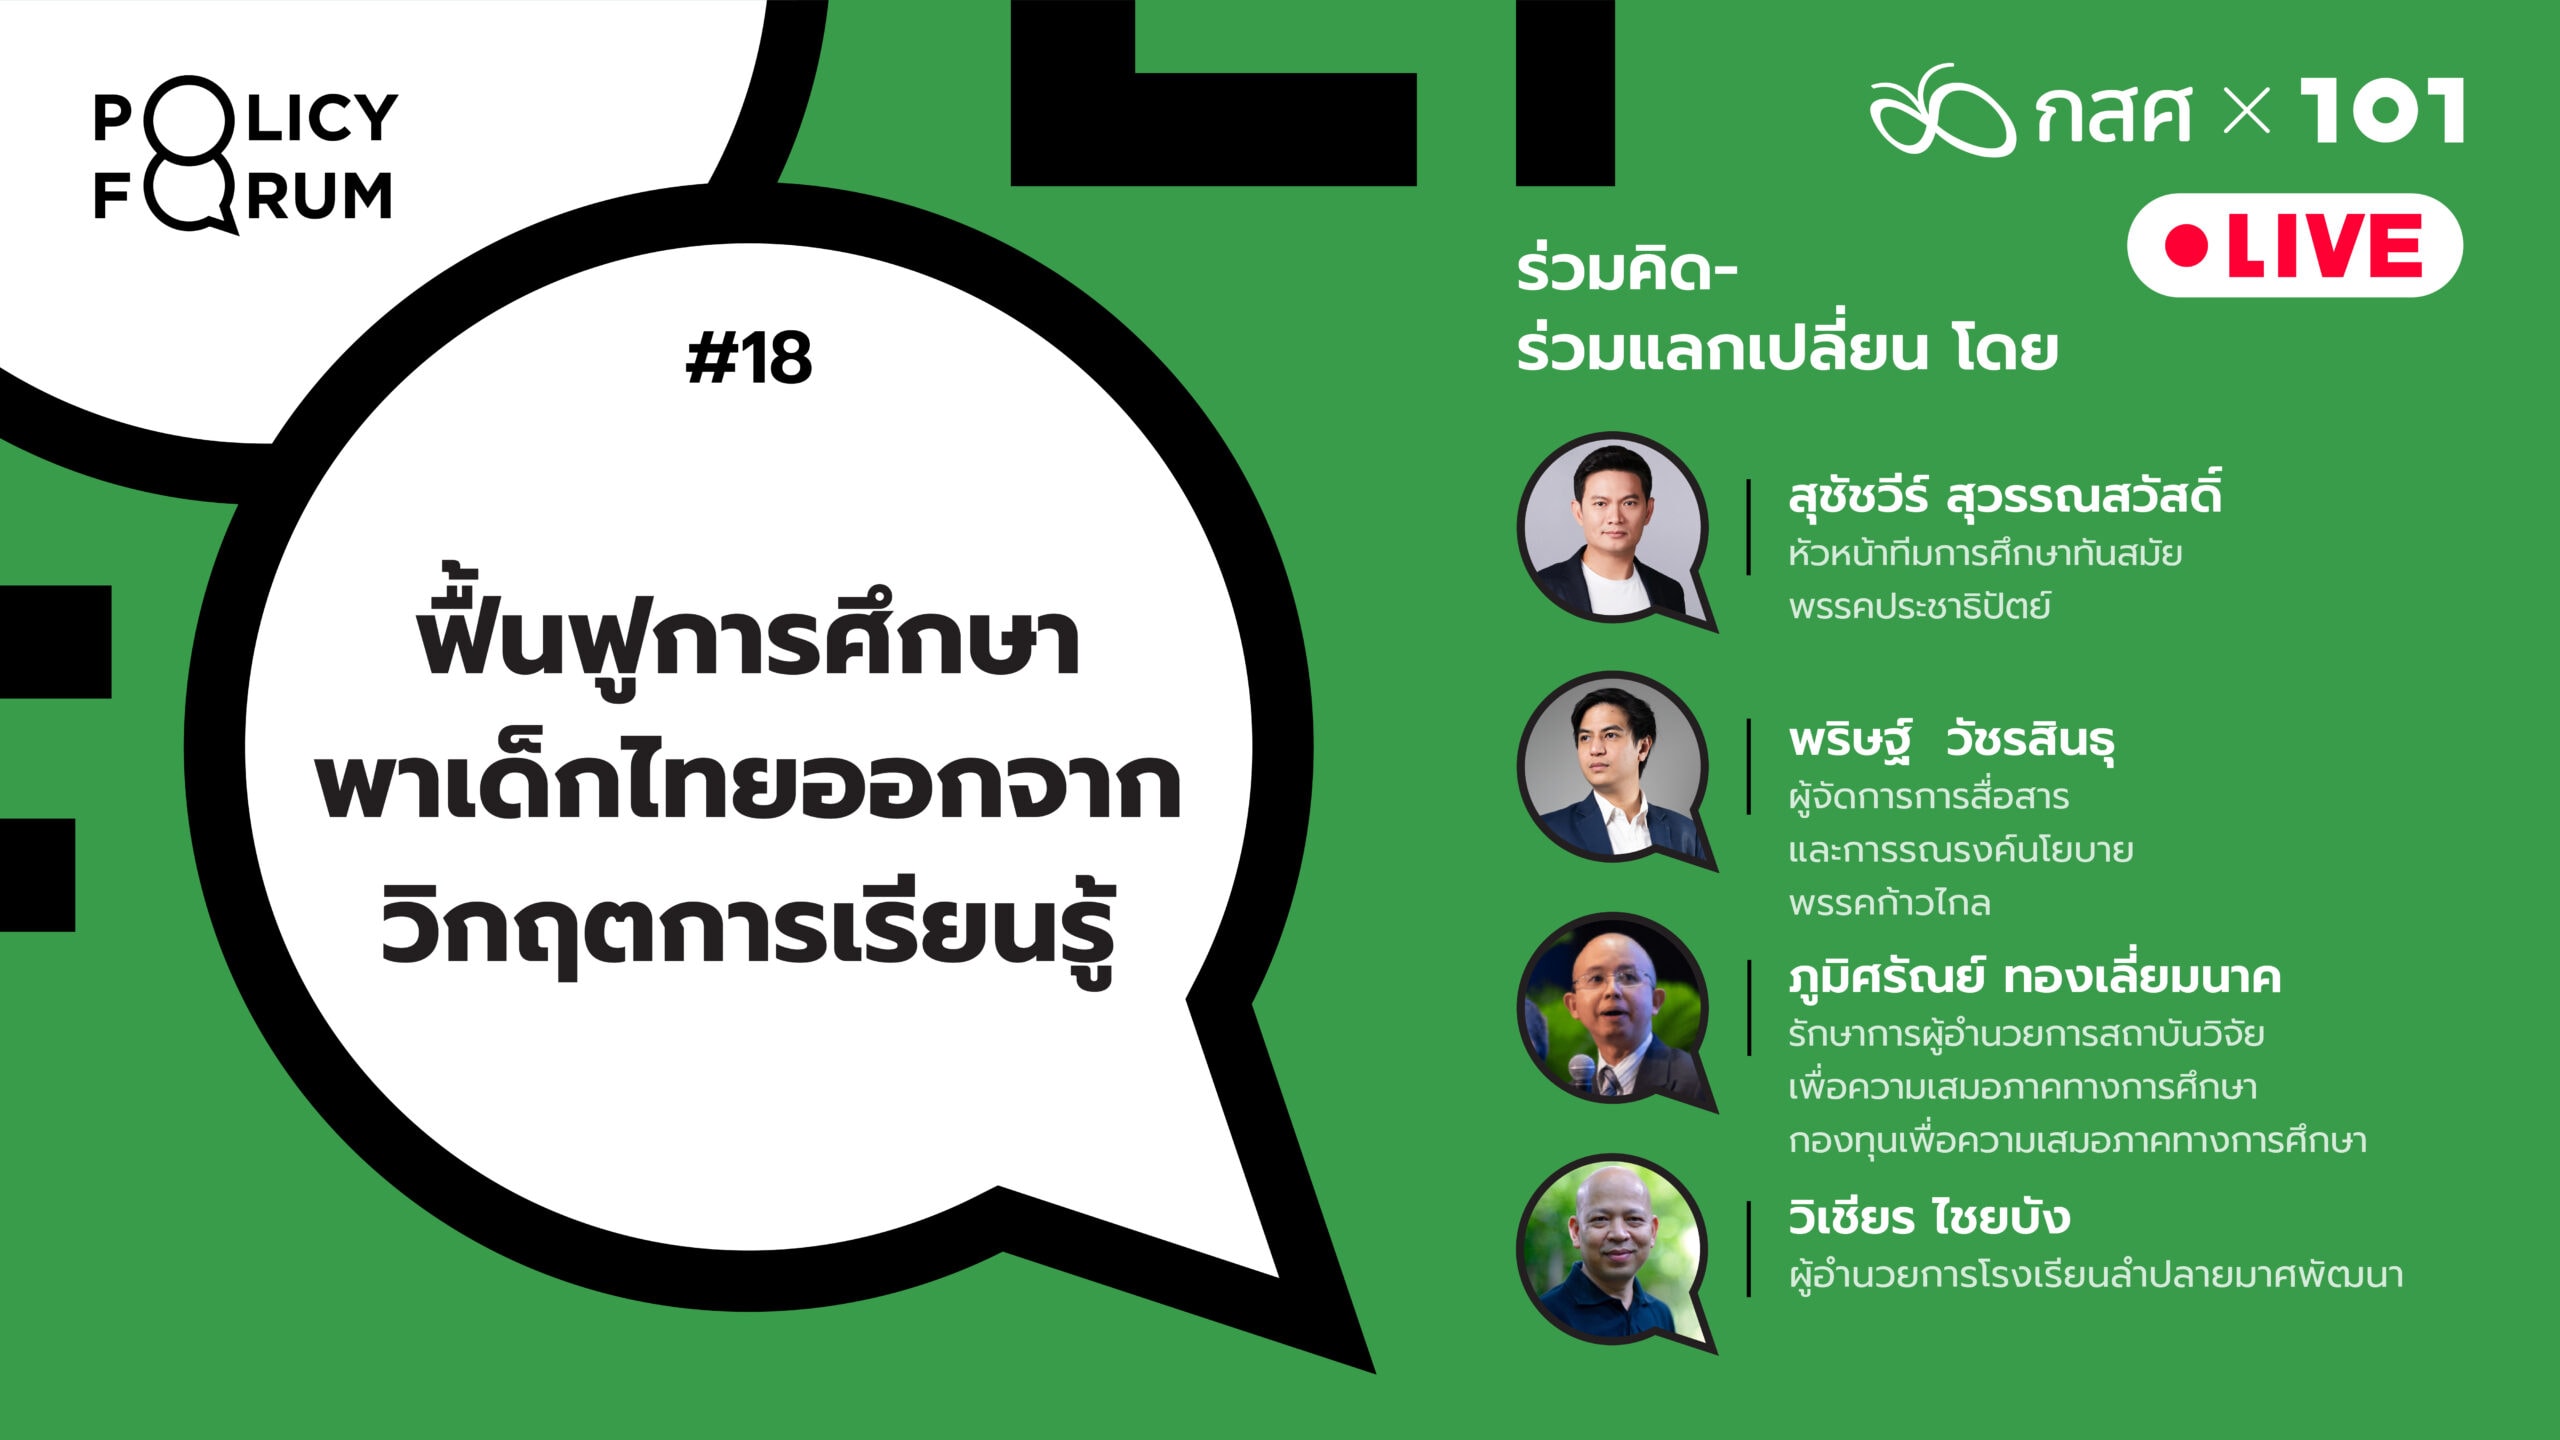 101 Policy Forum #18 ฟื้นฟูการศึกษา พาเด็กไทยออกจากวิกฤตการเรียนรู้